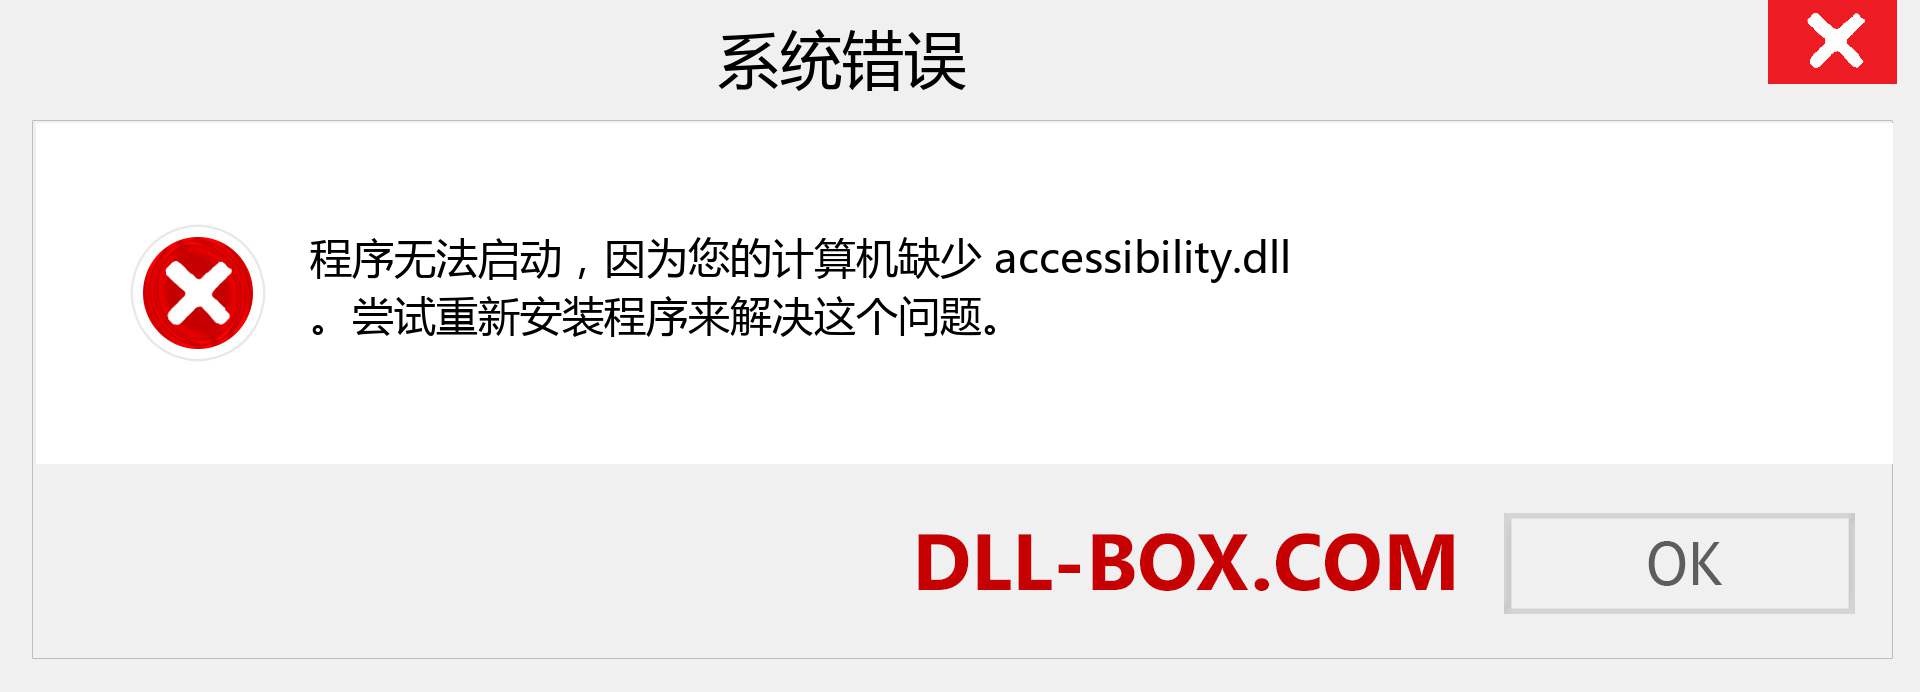 accessibility.dll 文件丢失？。 适用于 Windows 7、8、10 的下载 - 修复 Windows、照片、图像上的 accessibility dll 丢失错误